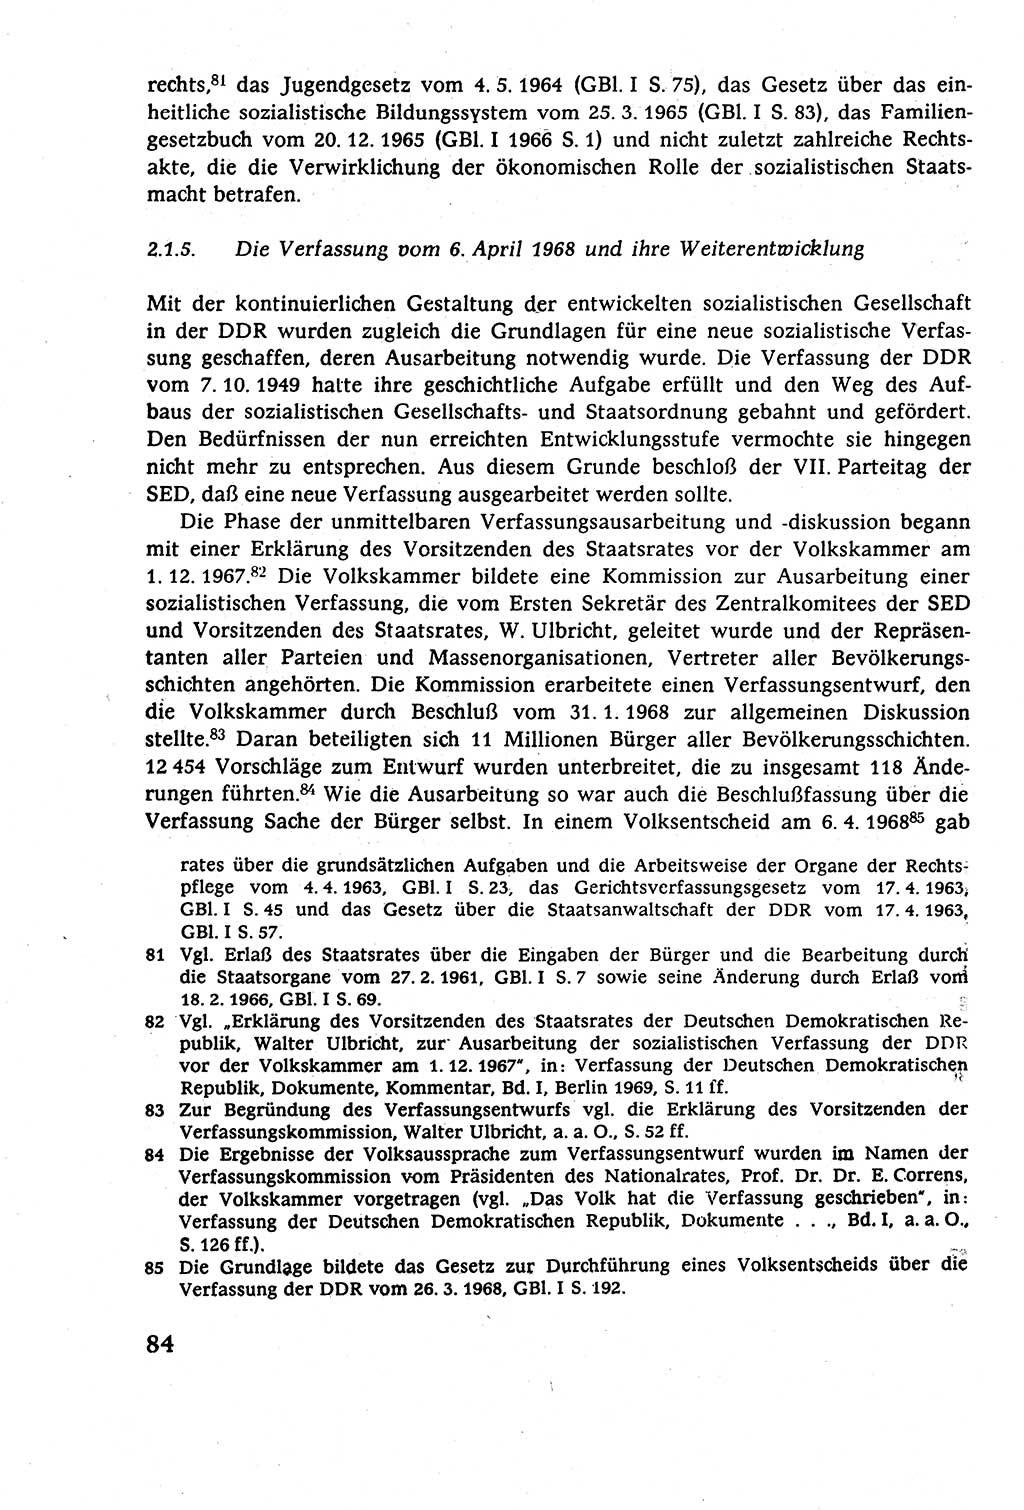 Staatsrecht der DDR (Deutsche Demokratische Republik), Lehrbuch 1977, Seite 84 (St.-R. DDR Lb. 1977, S. 84)